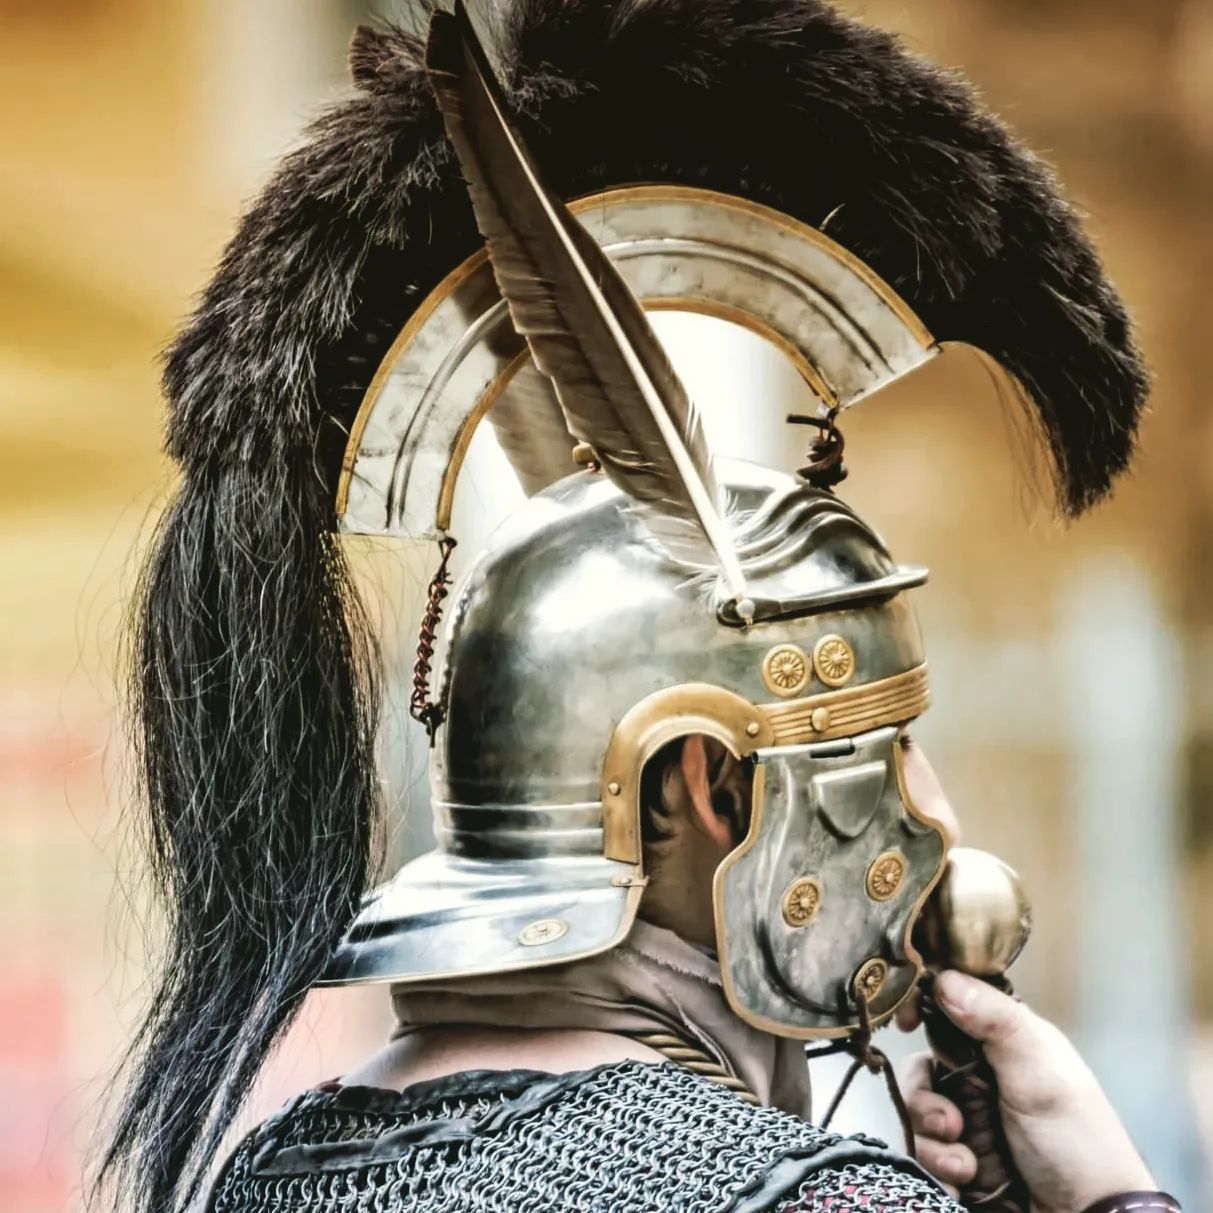 L'optio de de Legion VI Victrix d'Arles pour les Jeux d'Hadrien et la guerre des Pictes 2022
#legionvivictrixarles #spqr #rome #legionromaine #optio